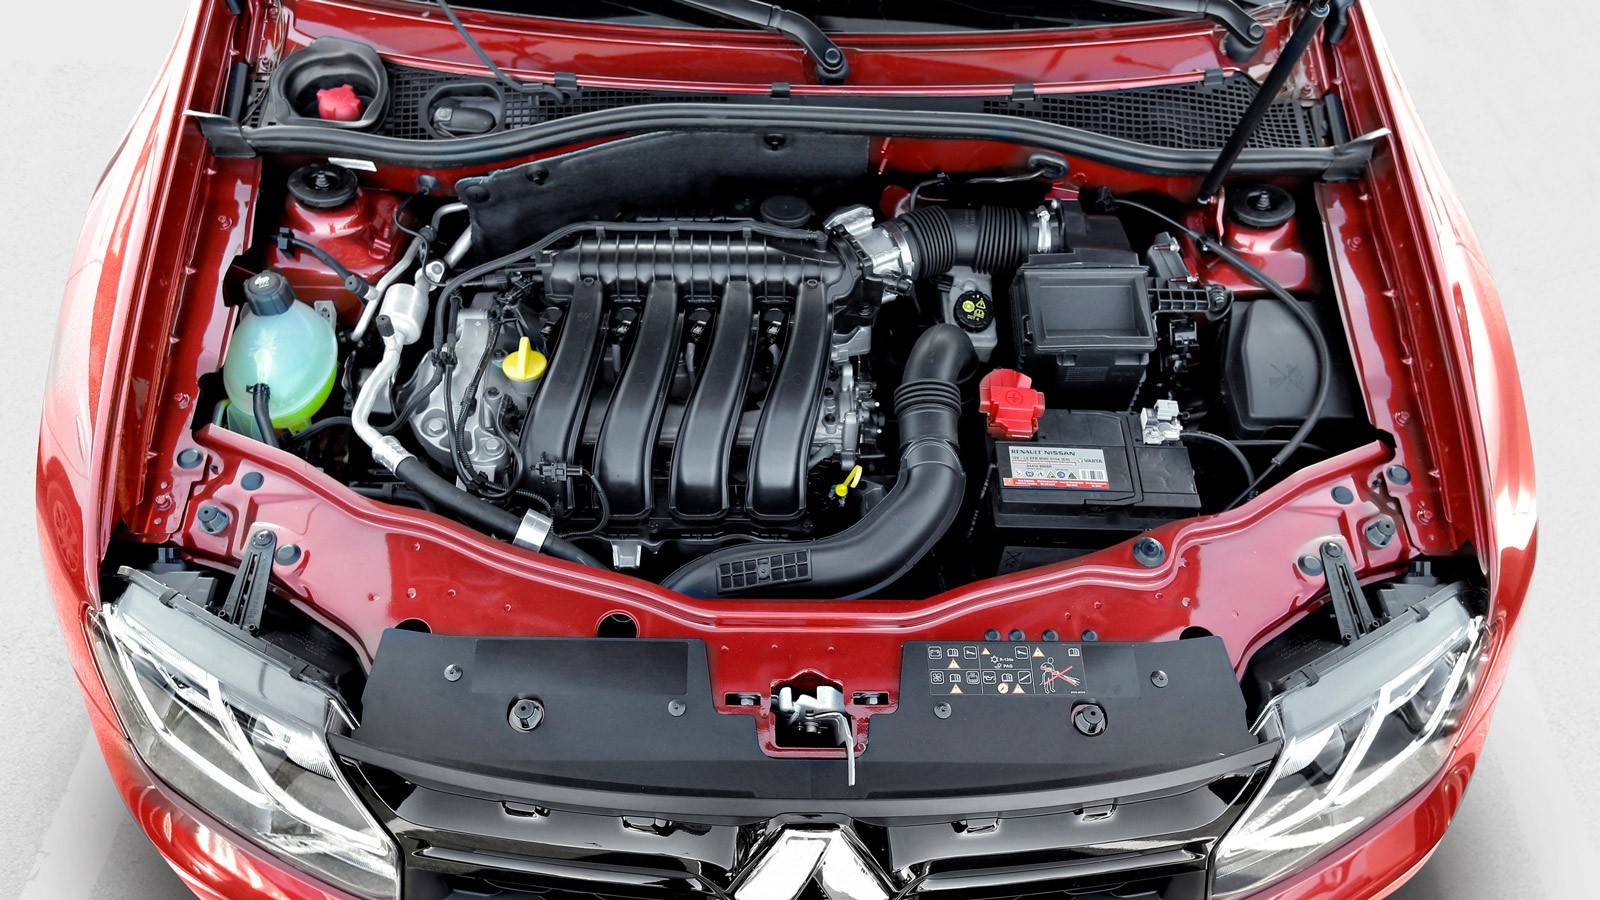 Двигатель toyota 1ar-fe: характеристики, надежность и отзывы